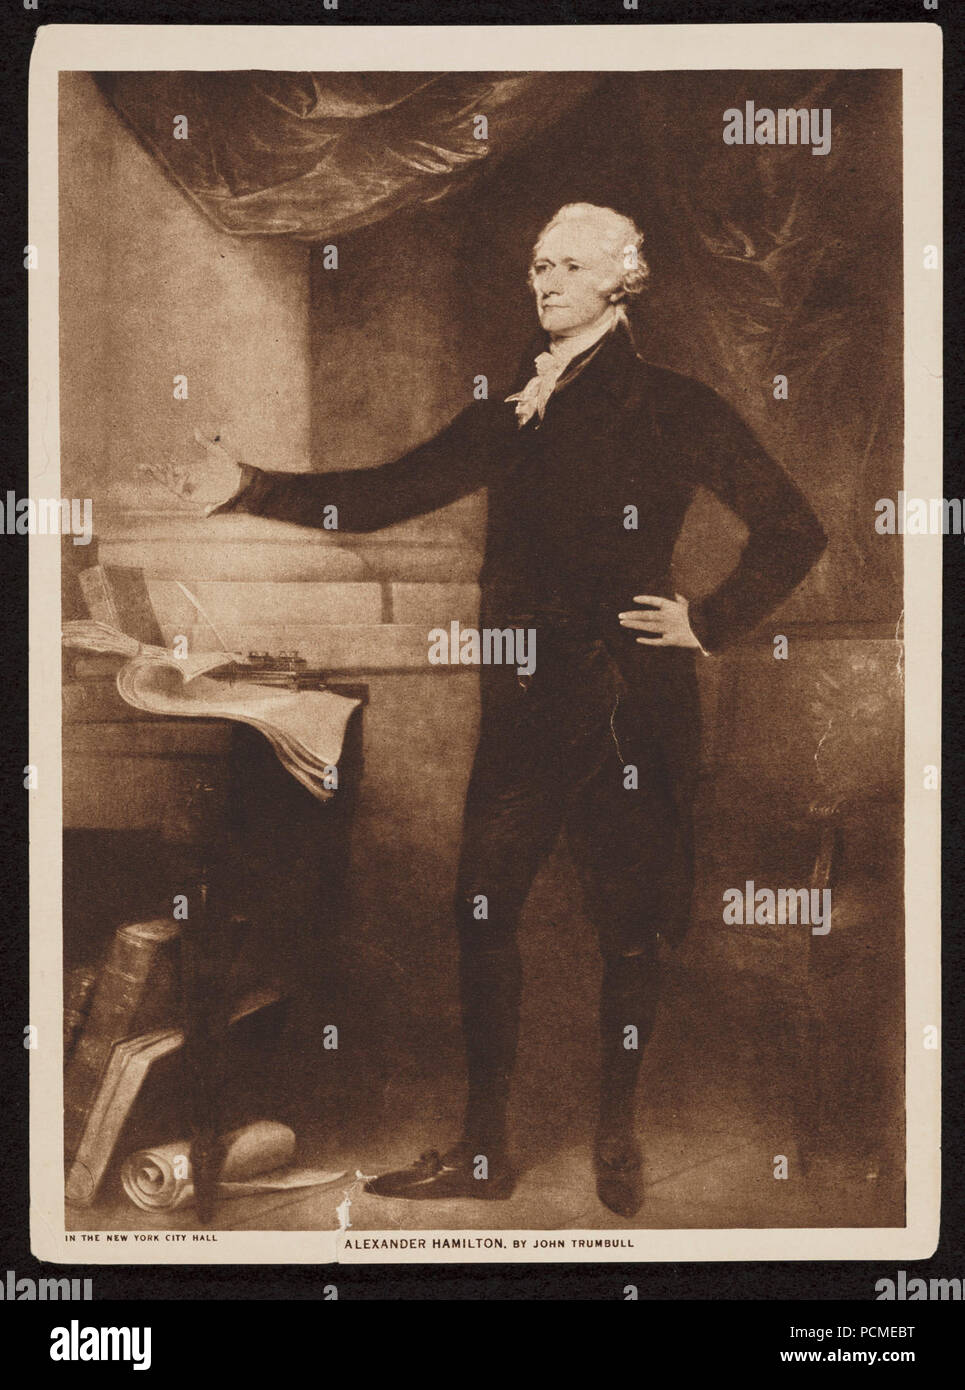 Alexander Hamilton, retrato de longitud completa, de pie, mirando hacia la izquierda en la cadera izquierda, el brazo derecho extendido hacia afuera, libros y papeles junto a él Foto de stock